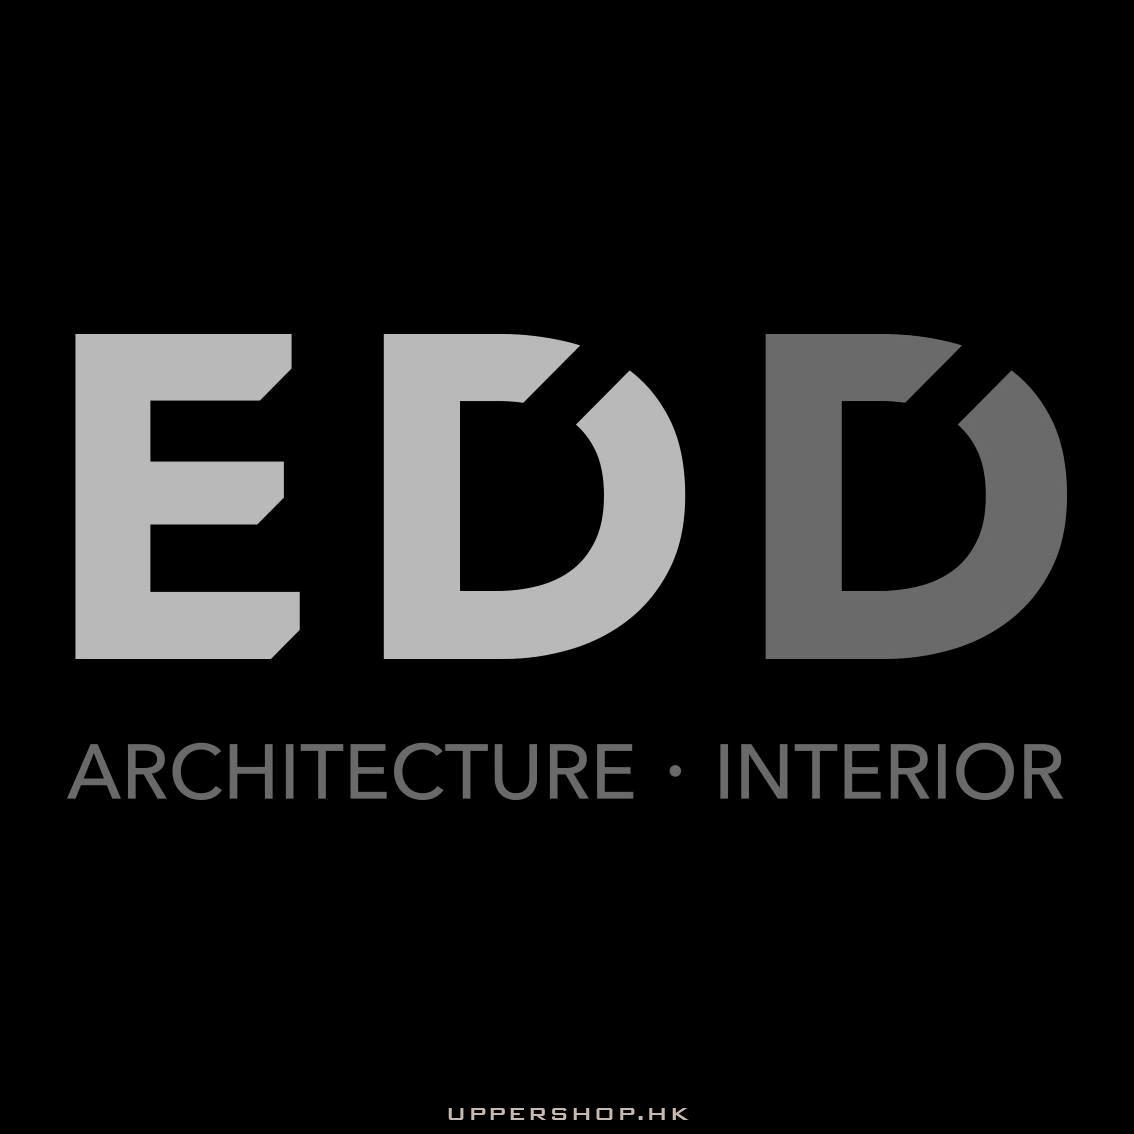 ED Design Limited